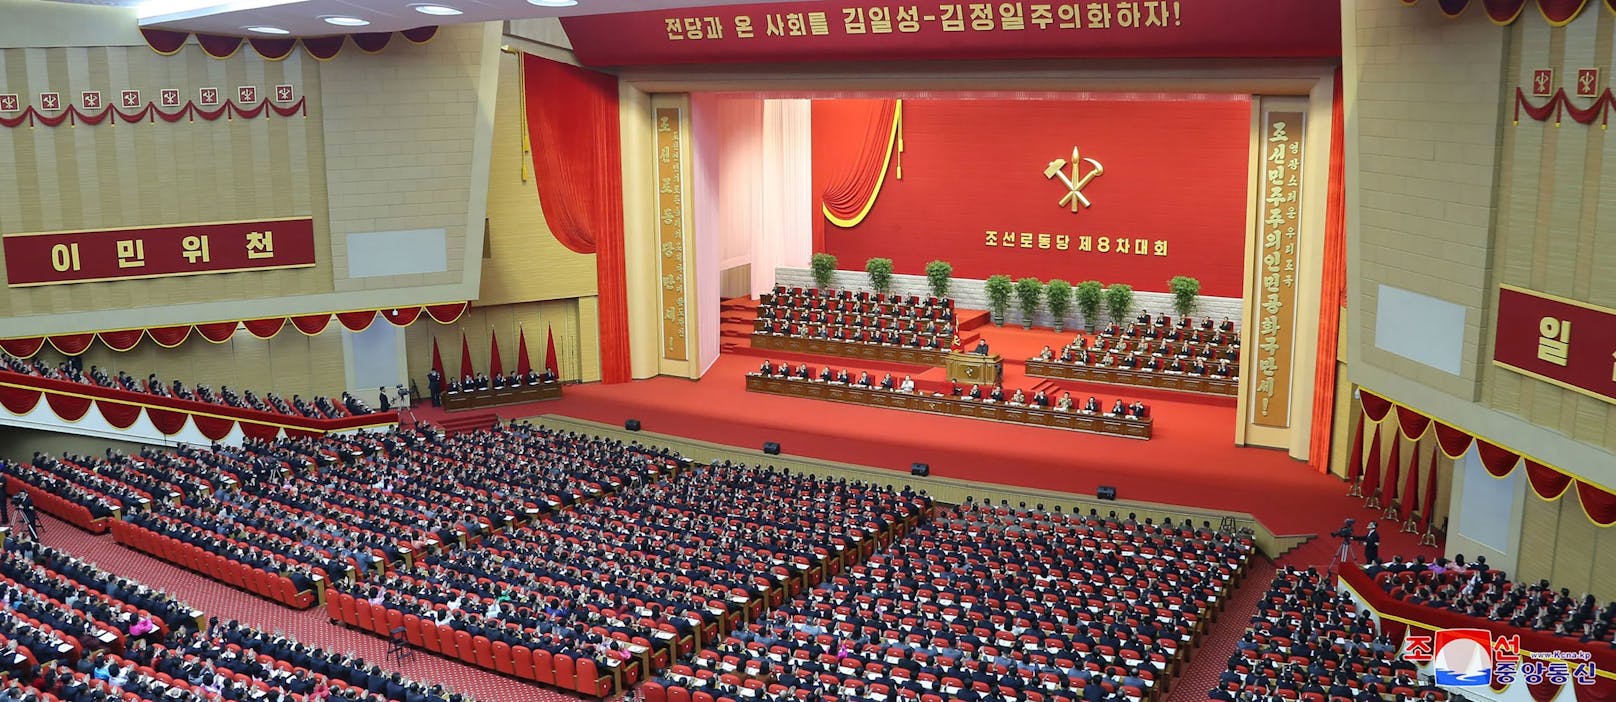 Beim Parteitag in Nordkorea stand der Machthaber natürlich im Mittelpunkt.